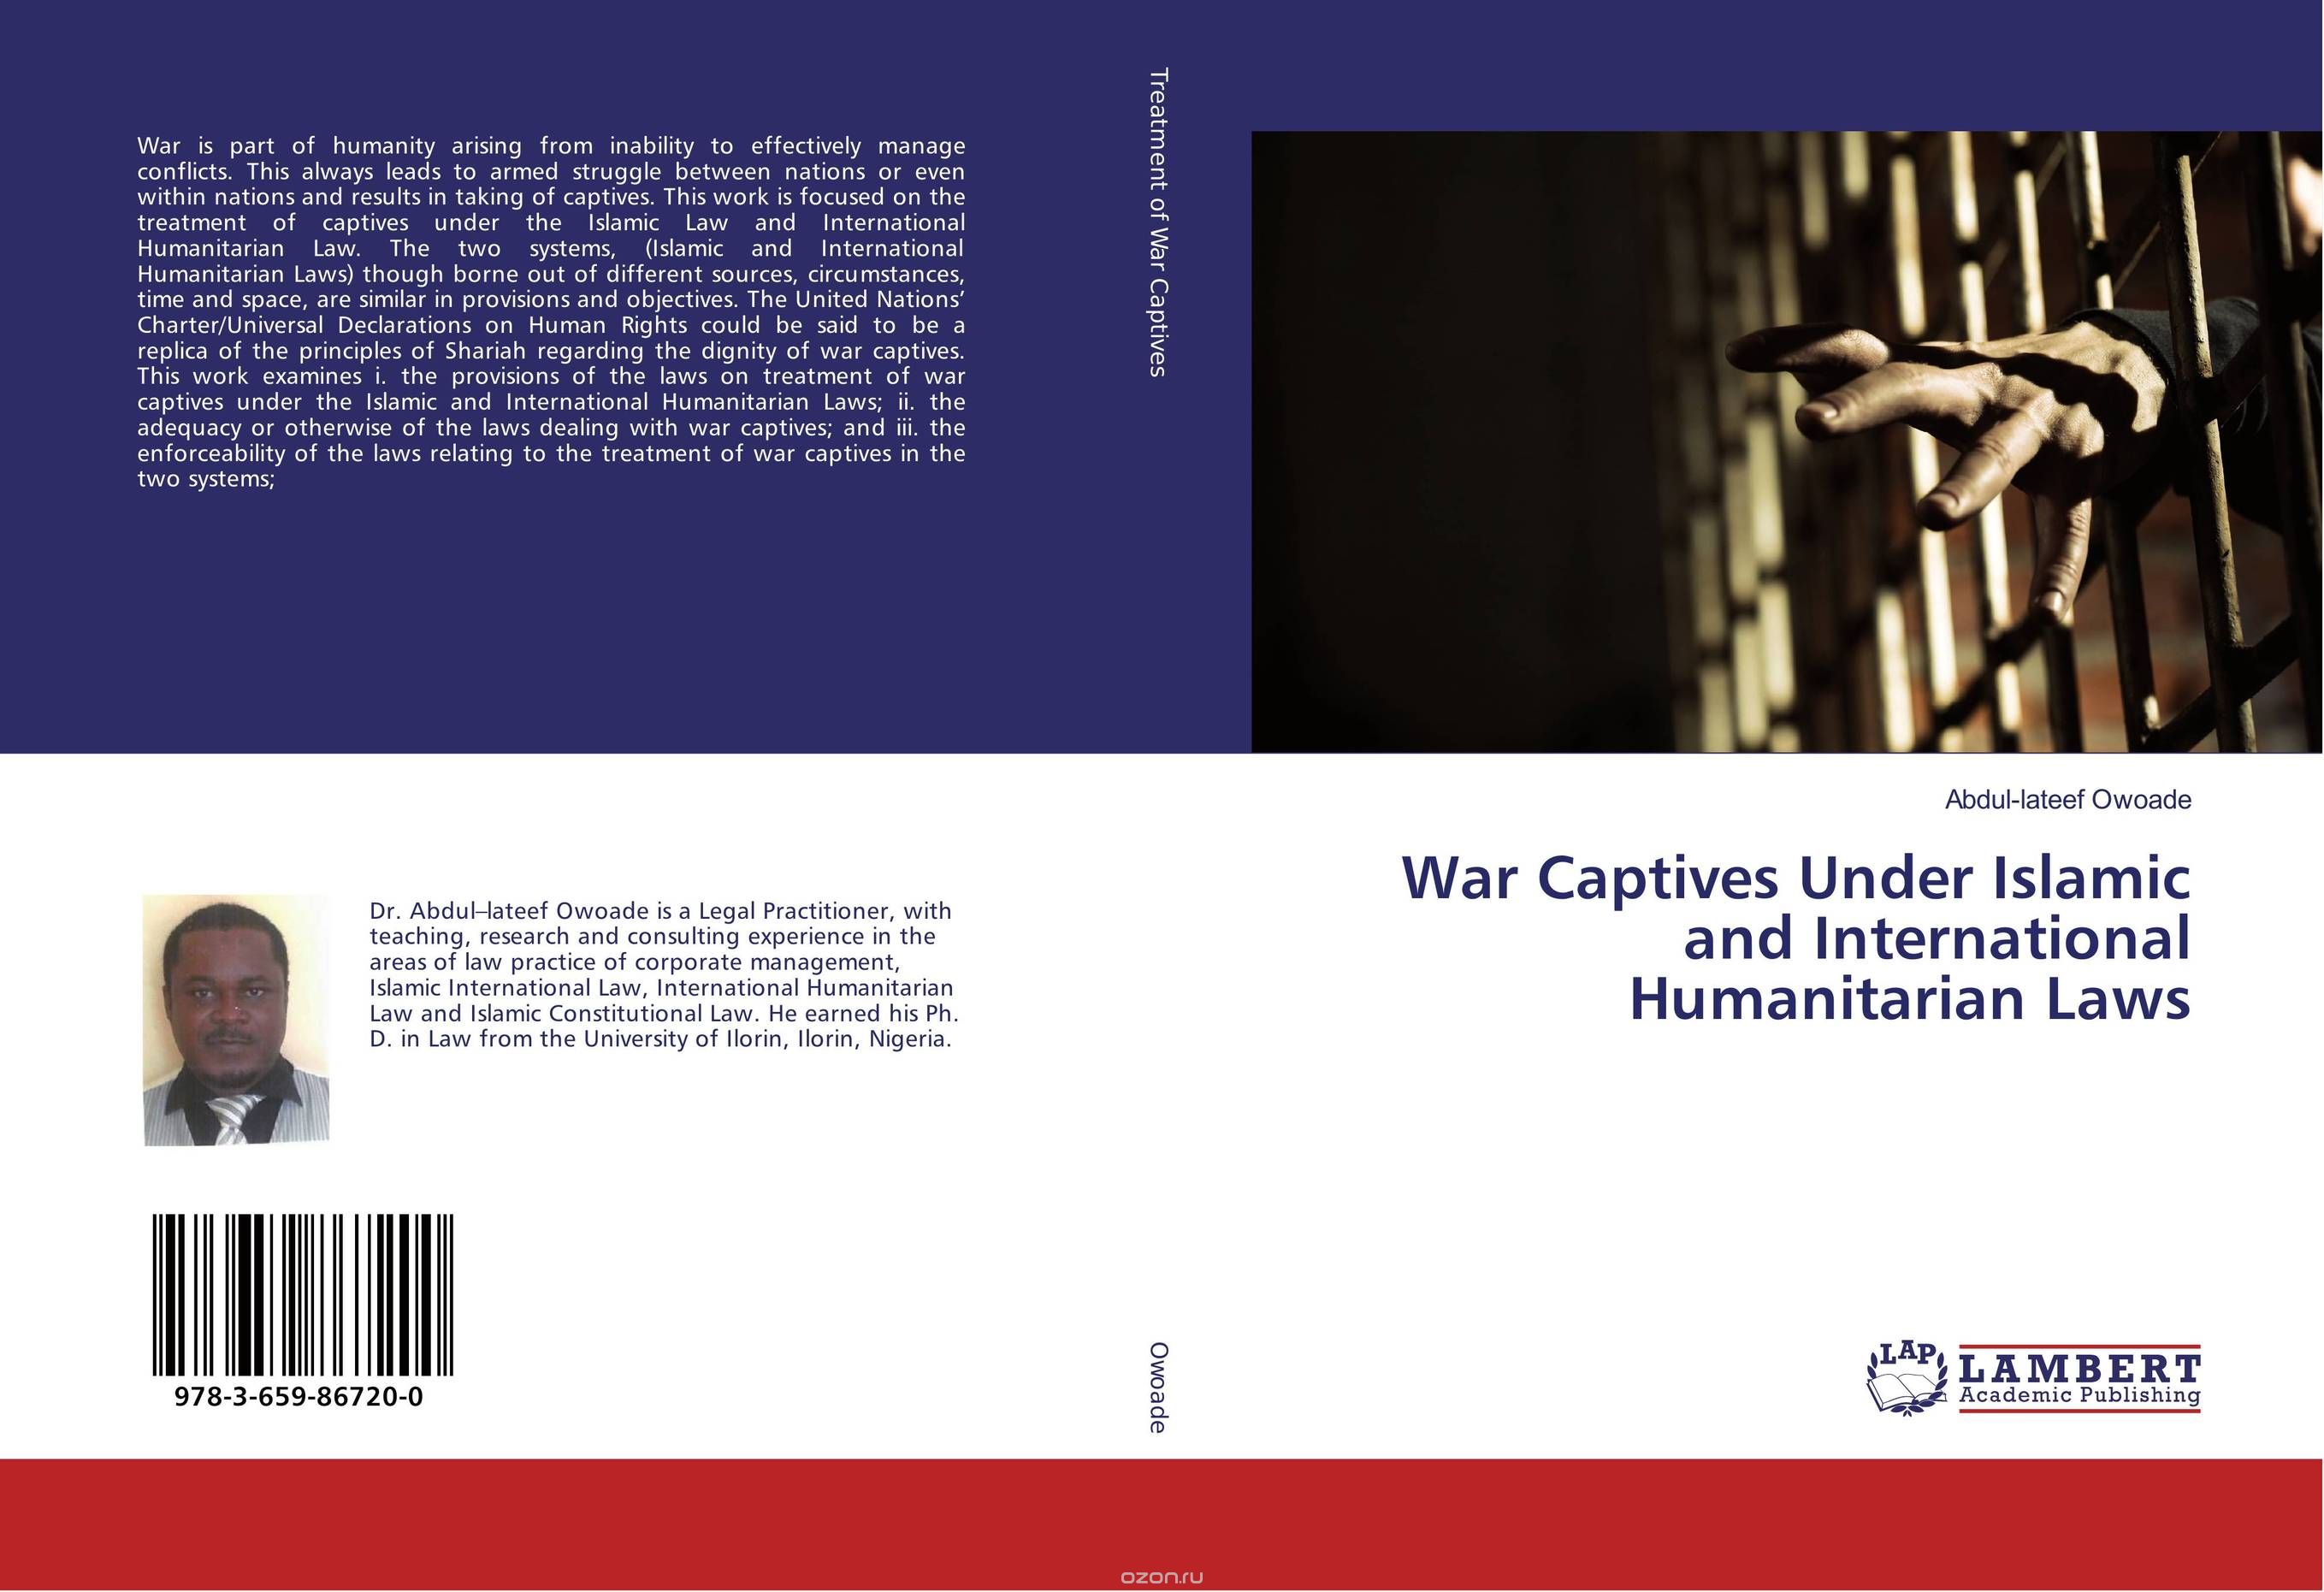 War Captives Under Islamic and International Humanitarian Laws